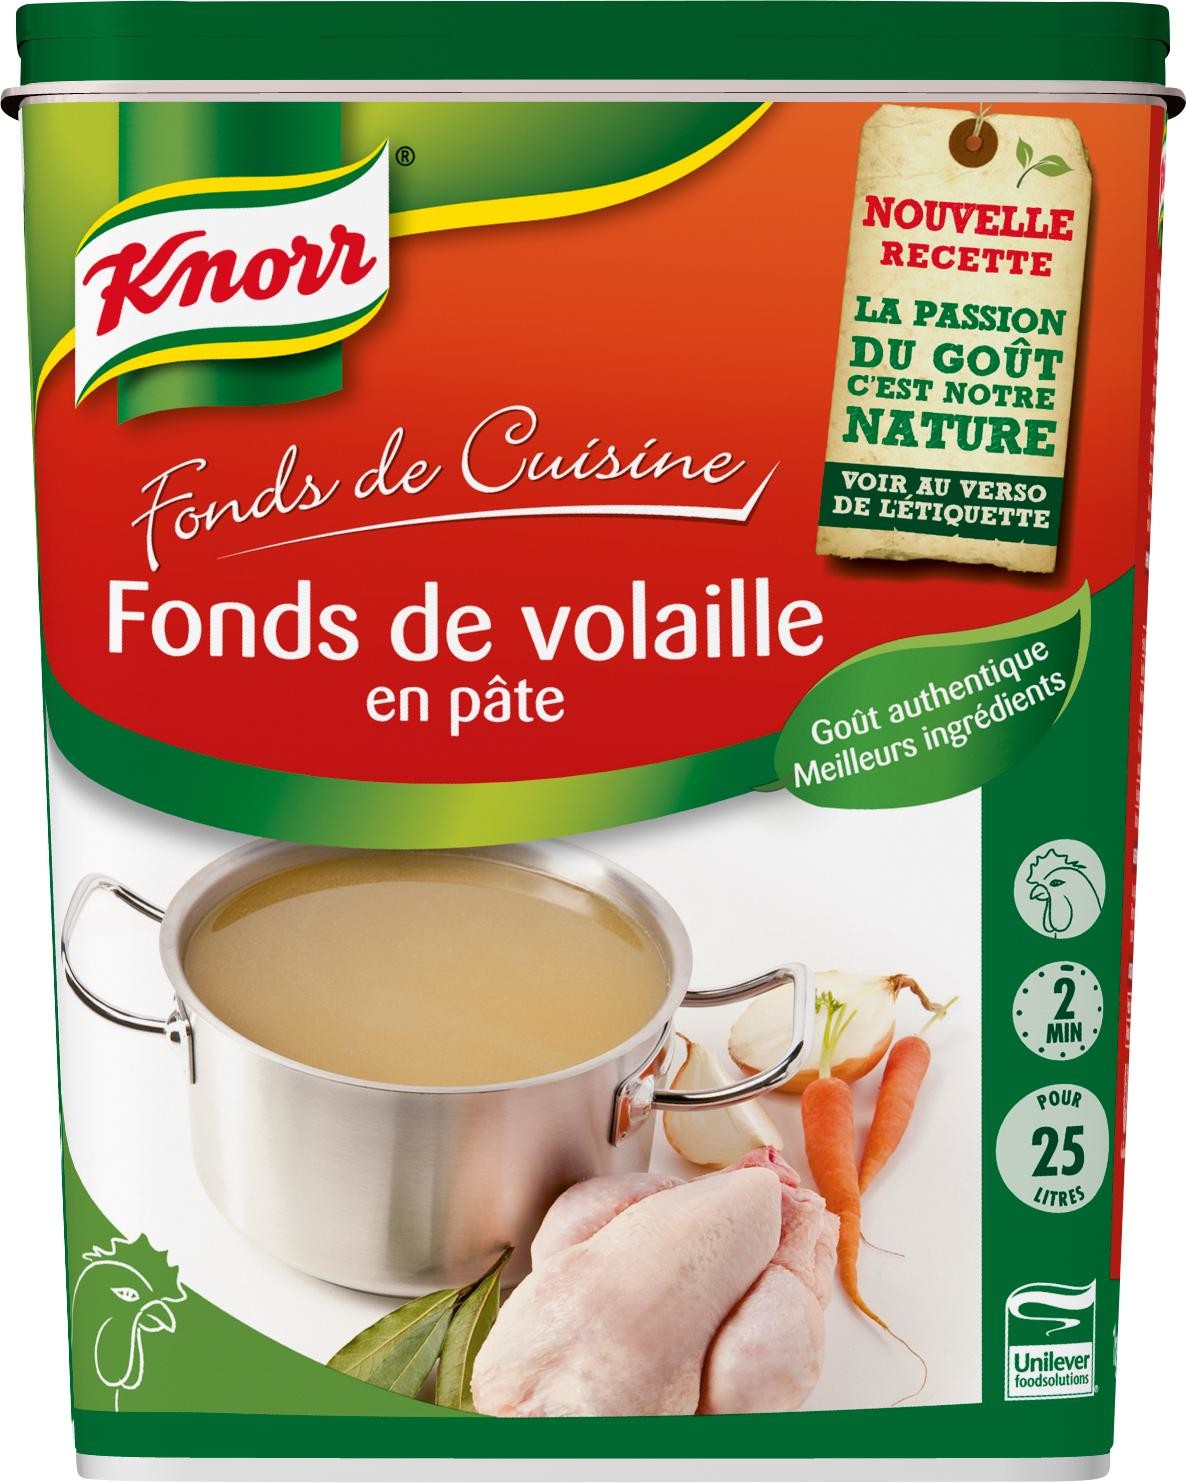 Knorr fond de volaille pate 1kg